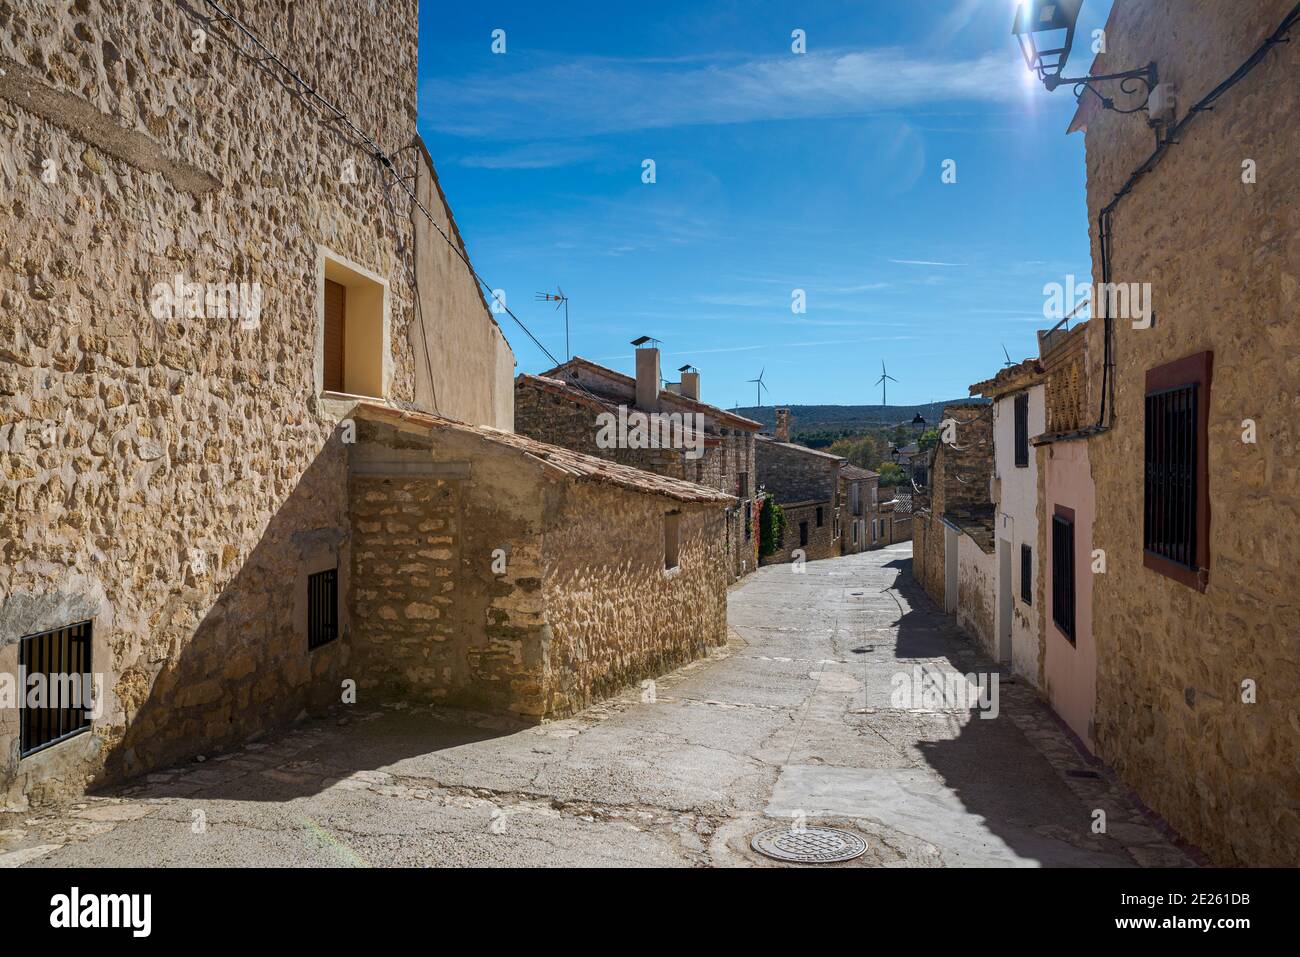 Traditionelle Architektur in Fuendetodos, einem kleinen Dorf in der Provinz Zaragoza, Spanien. Es ist bekannt als Geburtsort des Malers Franc Stockfoto